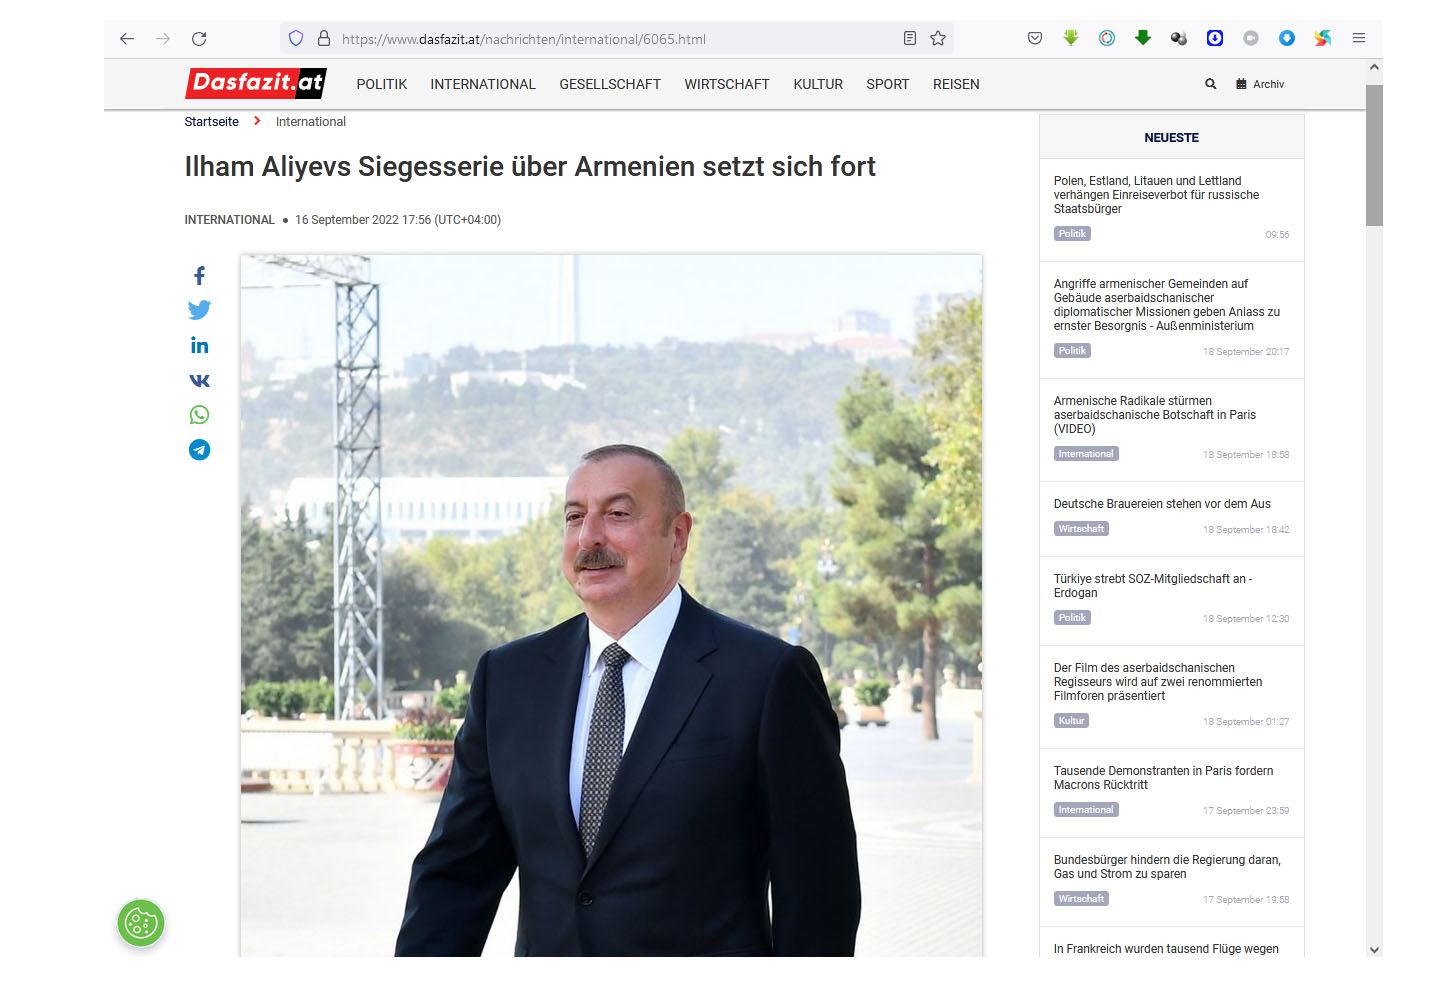 Президент Ильхам Алиев превзошёл Армению как на поле боя, так и на политической арене - австрийское издание